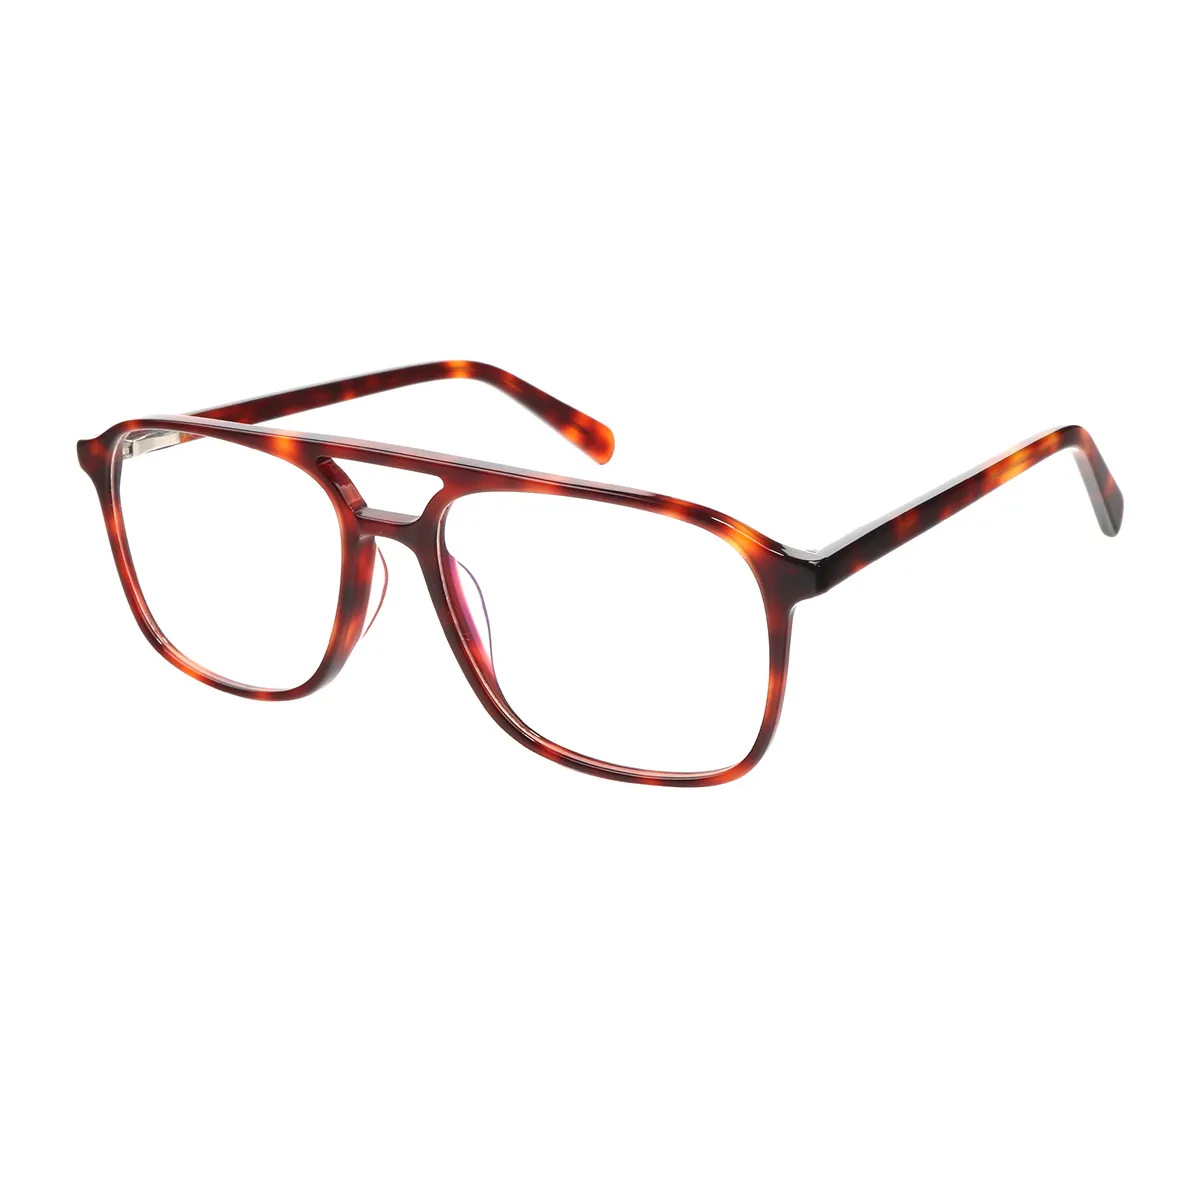 Dalton - Aviator Tortoiseshell Glasses for Men